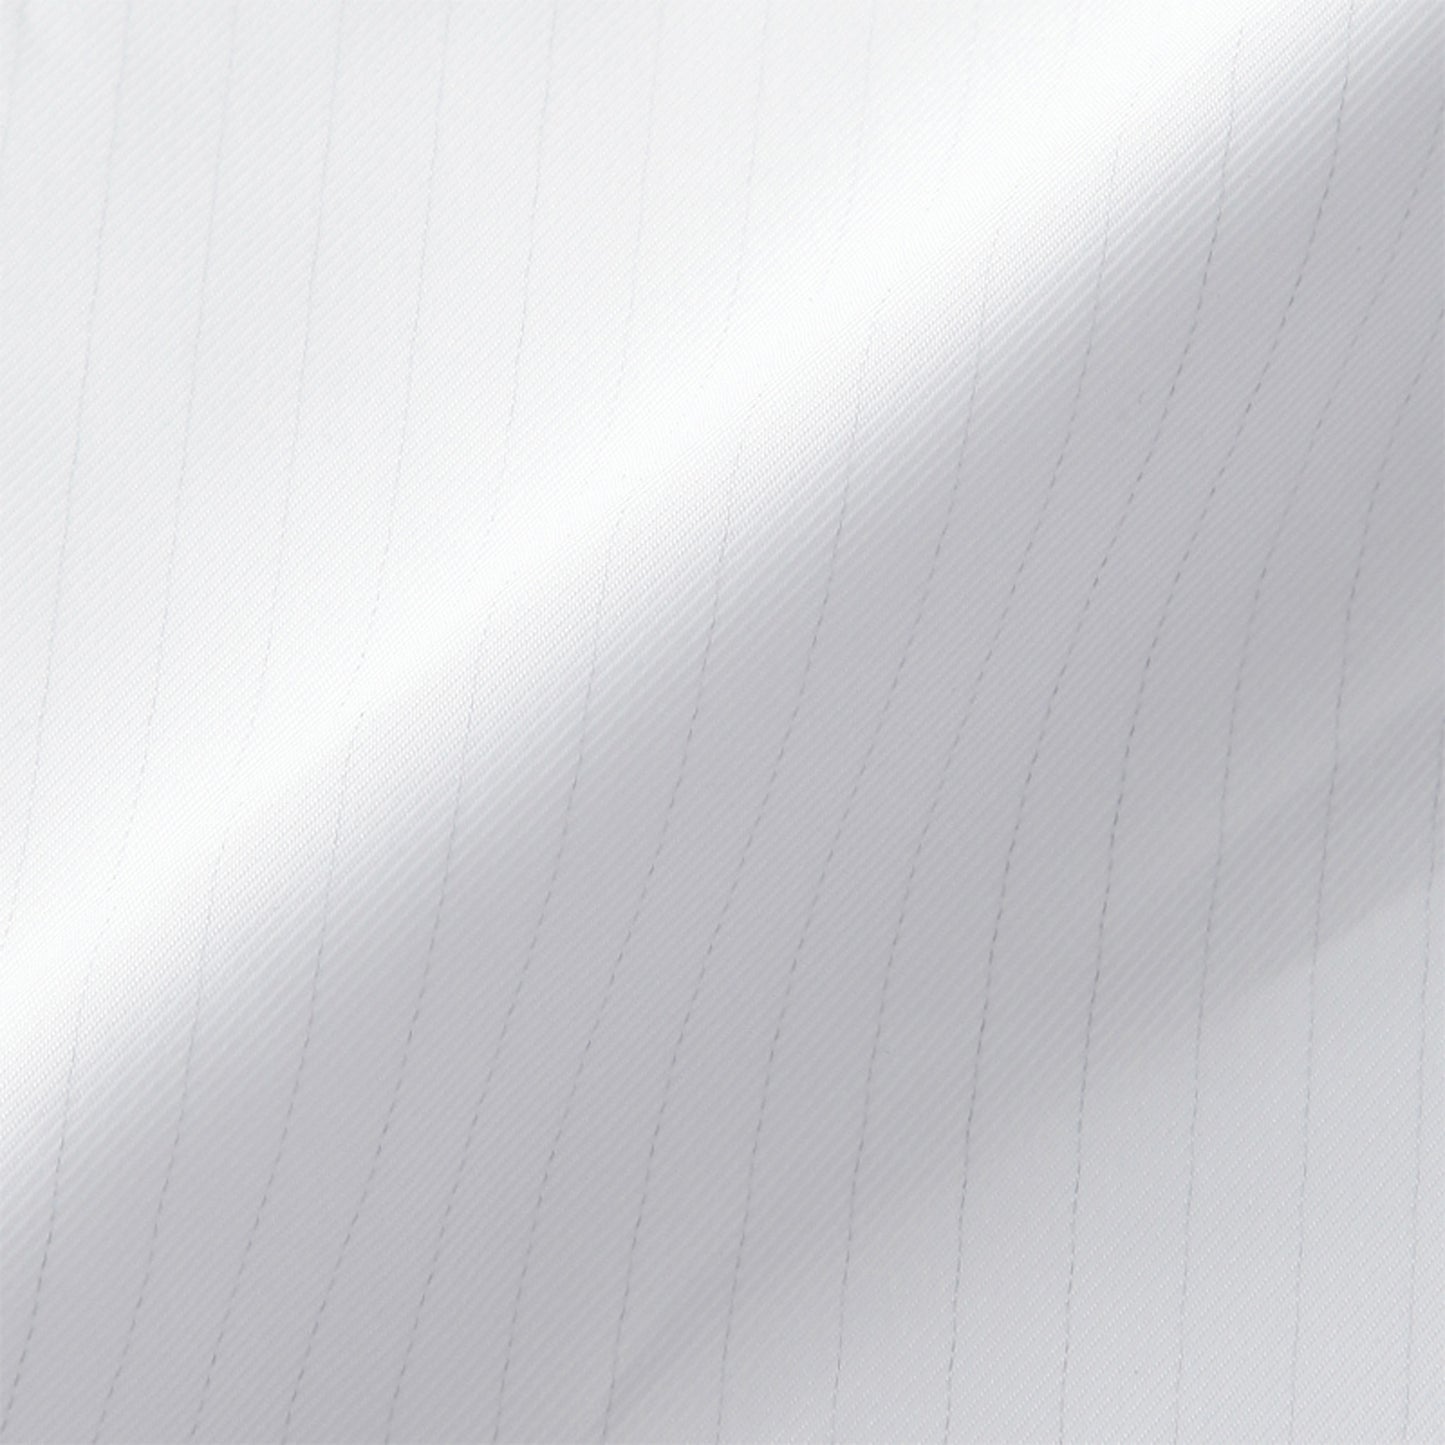 サンエス 食品工場用白衣 フードマイスター 常温・制菌・制電・低発塵の衛生白衣 【男女共用コート】 FX70330R